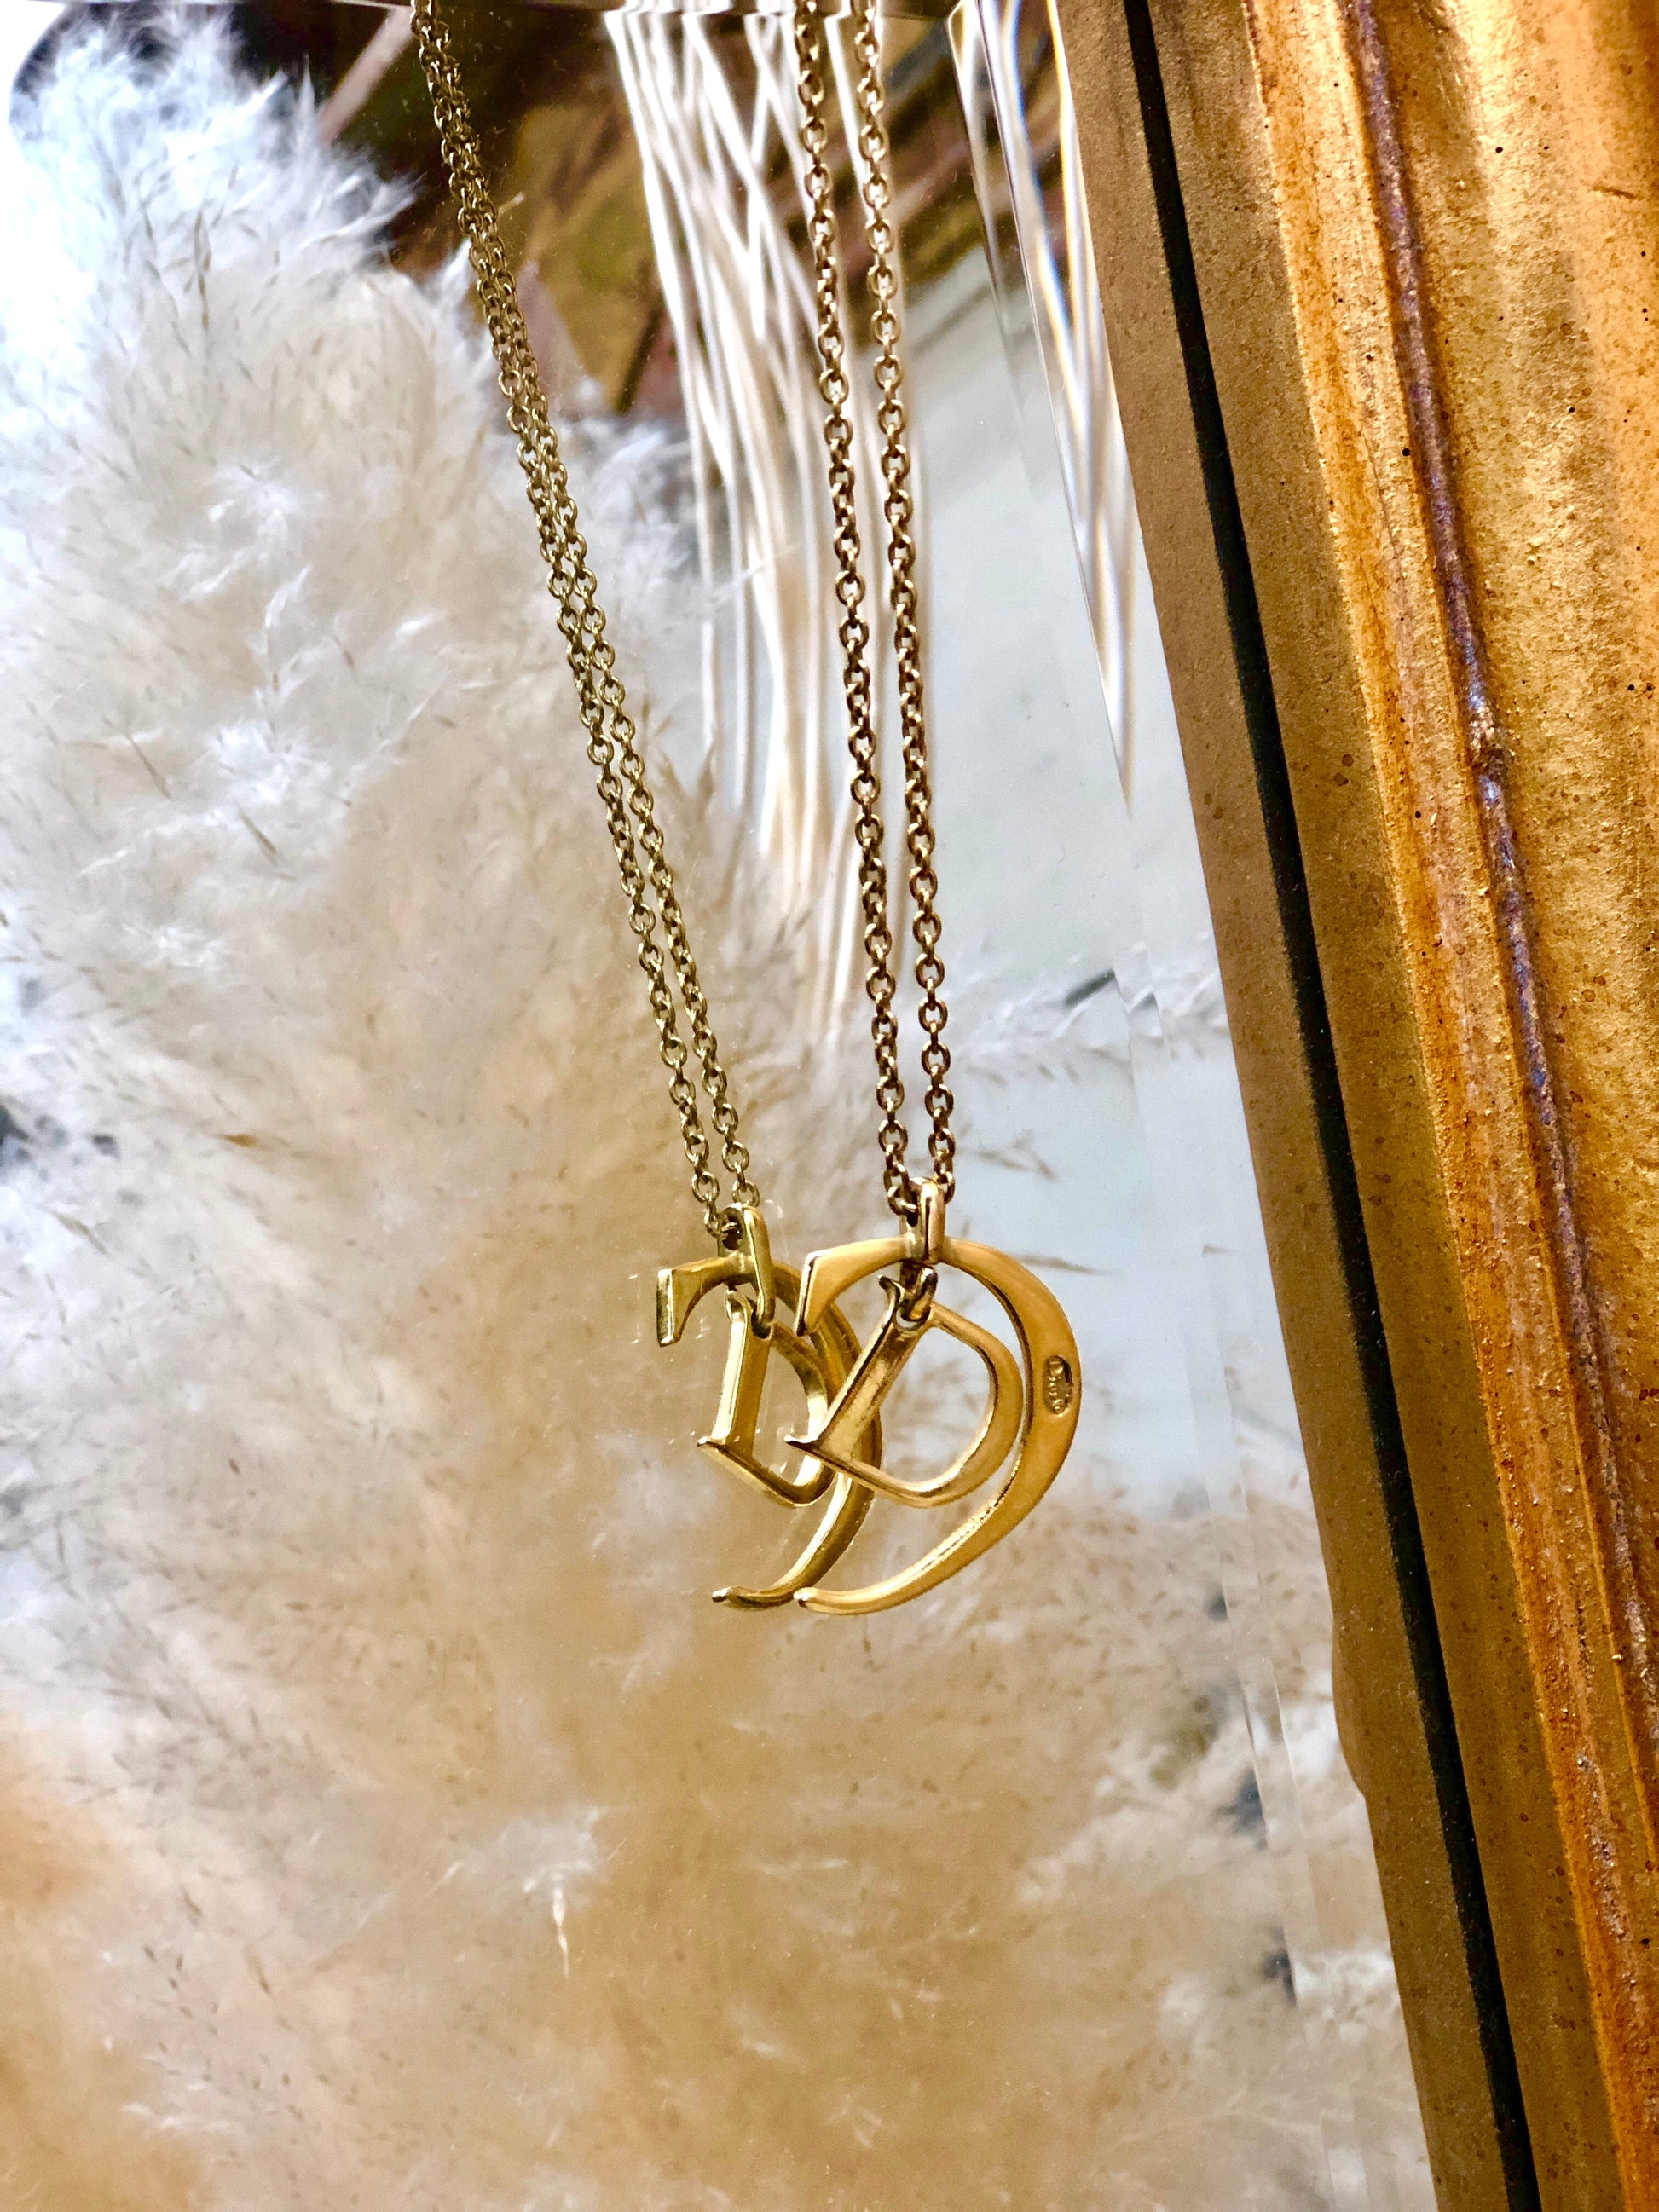 Louis Vuitton LV & Me Bracelet, Letter E, Gold, One Size